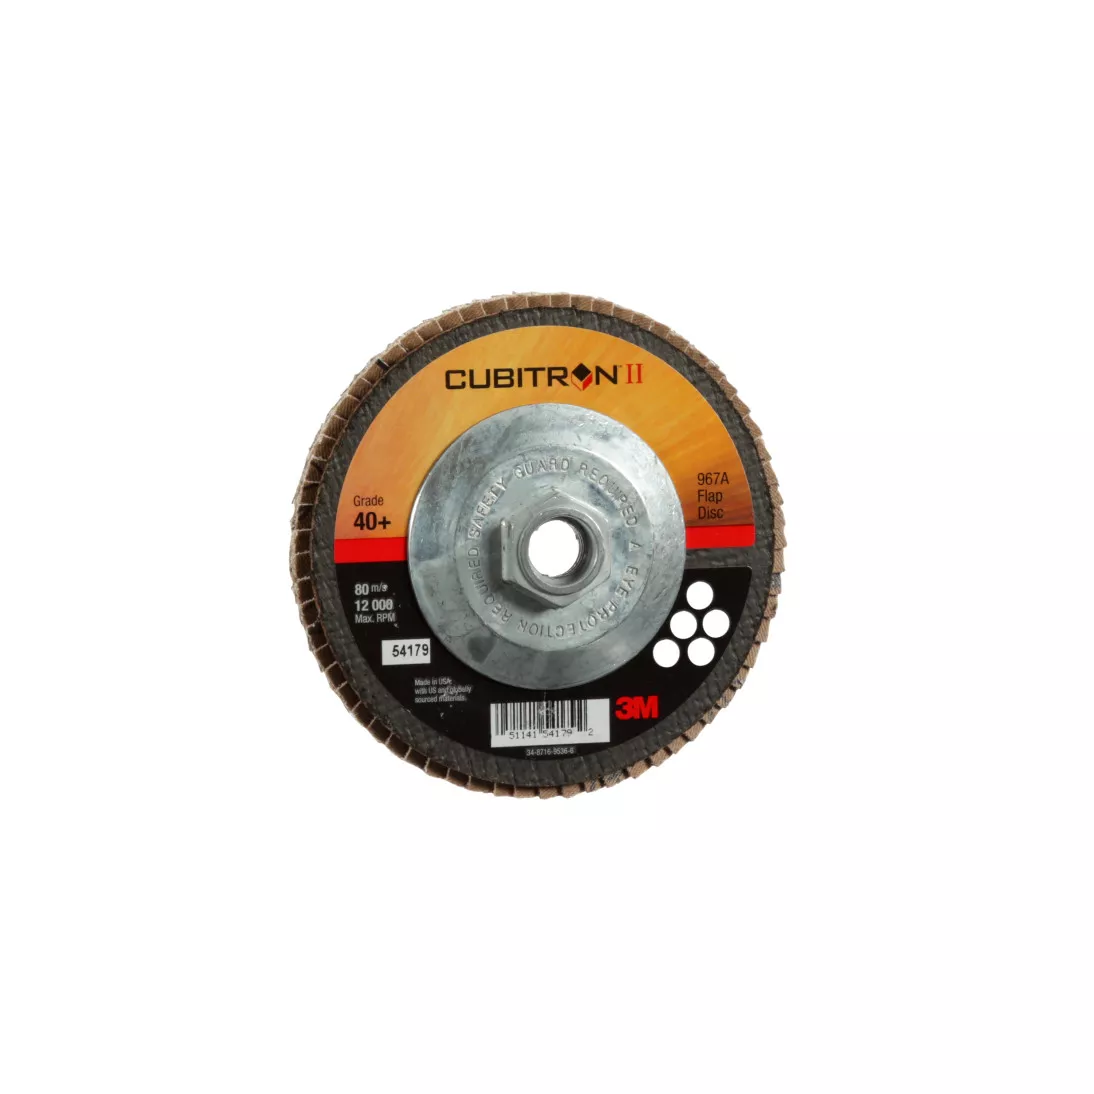 3M™ Cubitron™ II Flap Disc 967A, 40+, T27, 5 in x 5/8